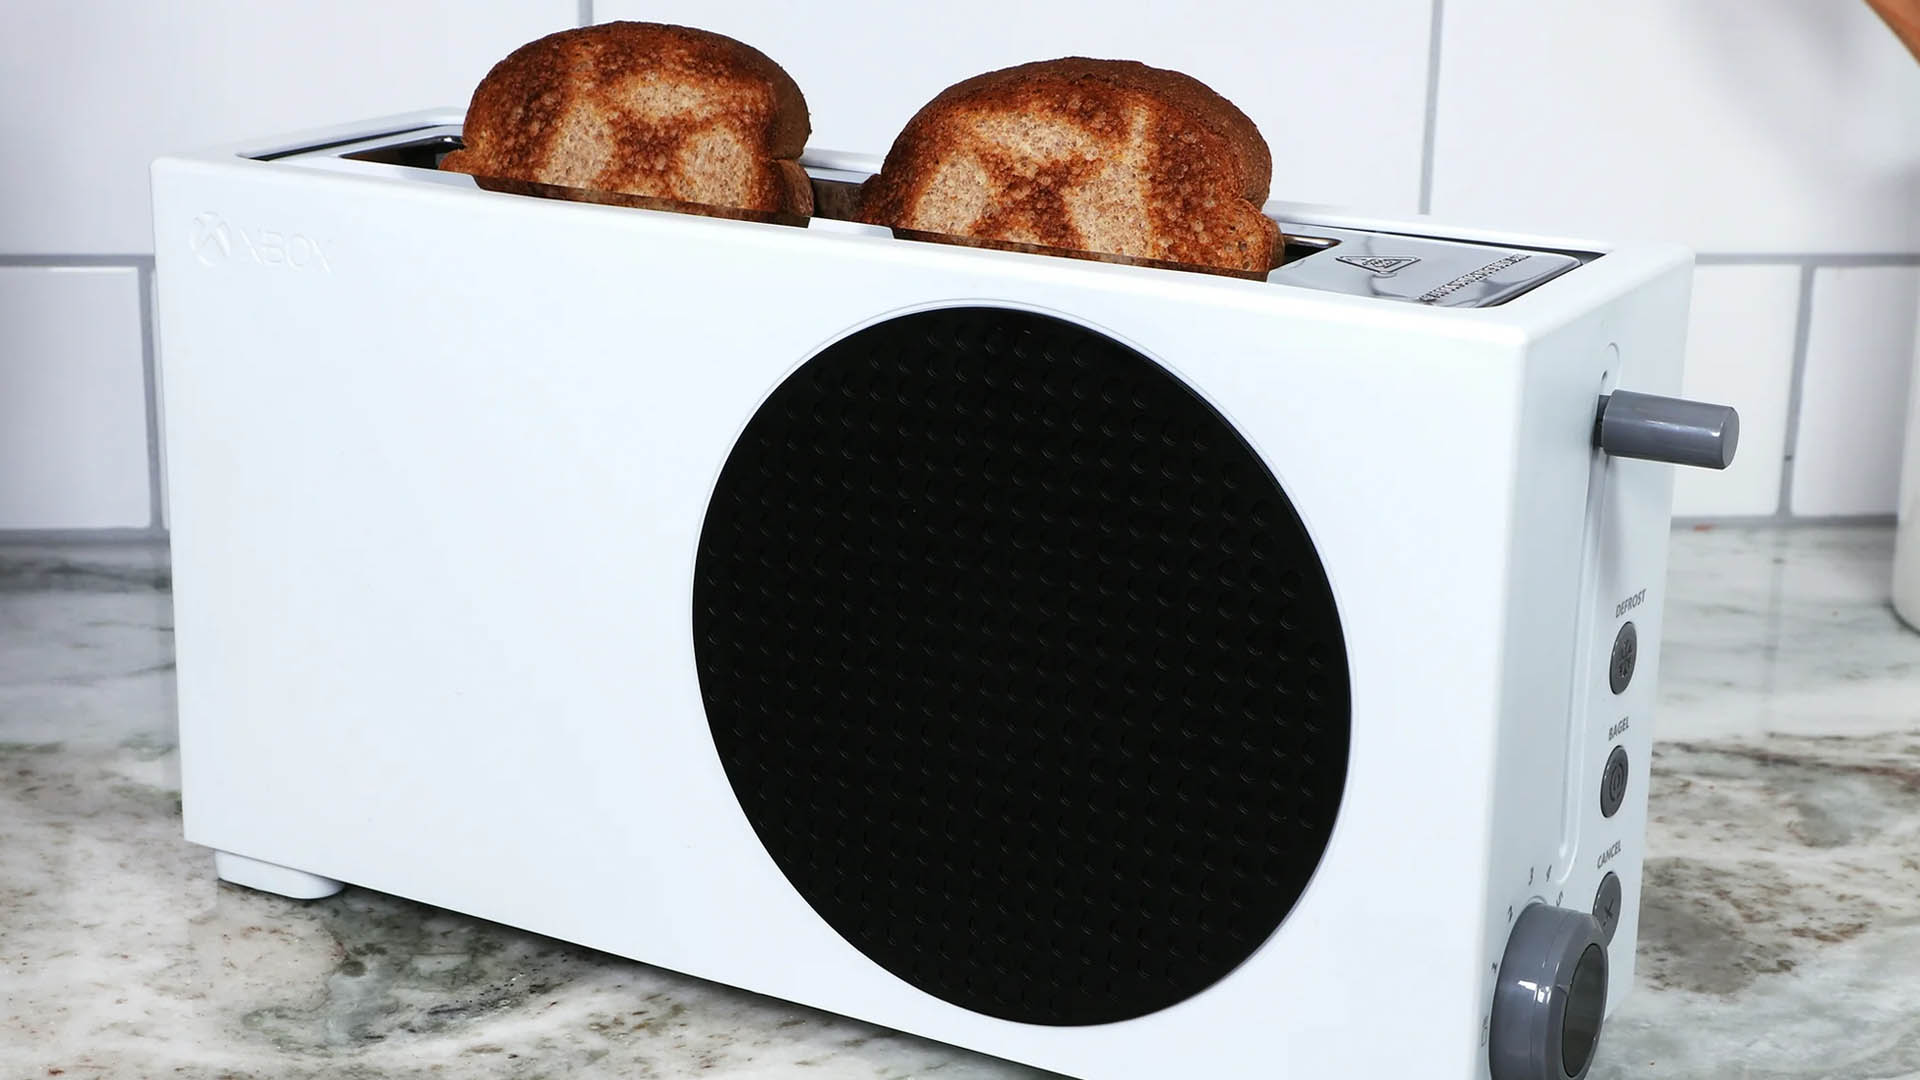 Xbox toaster